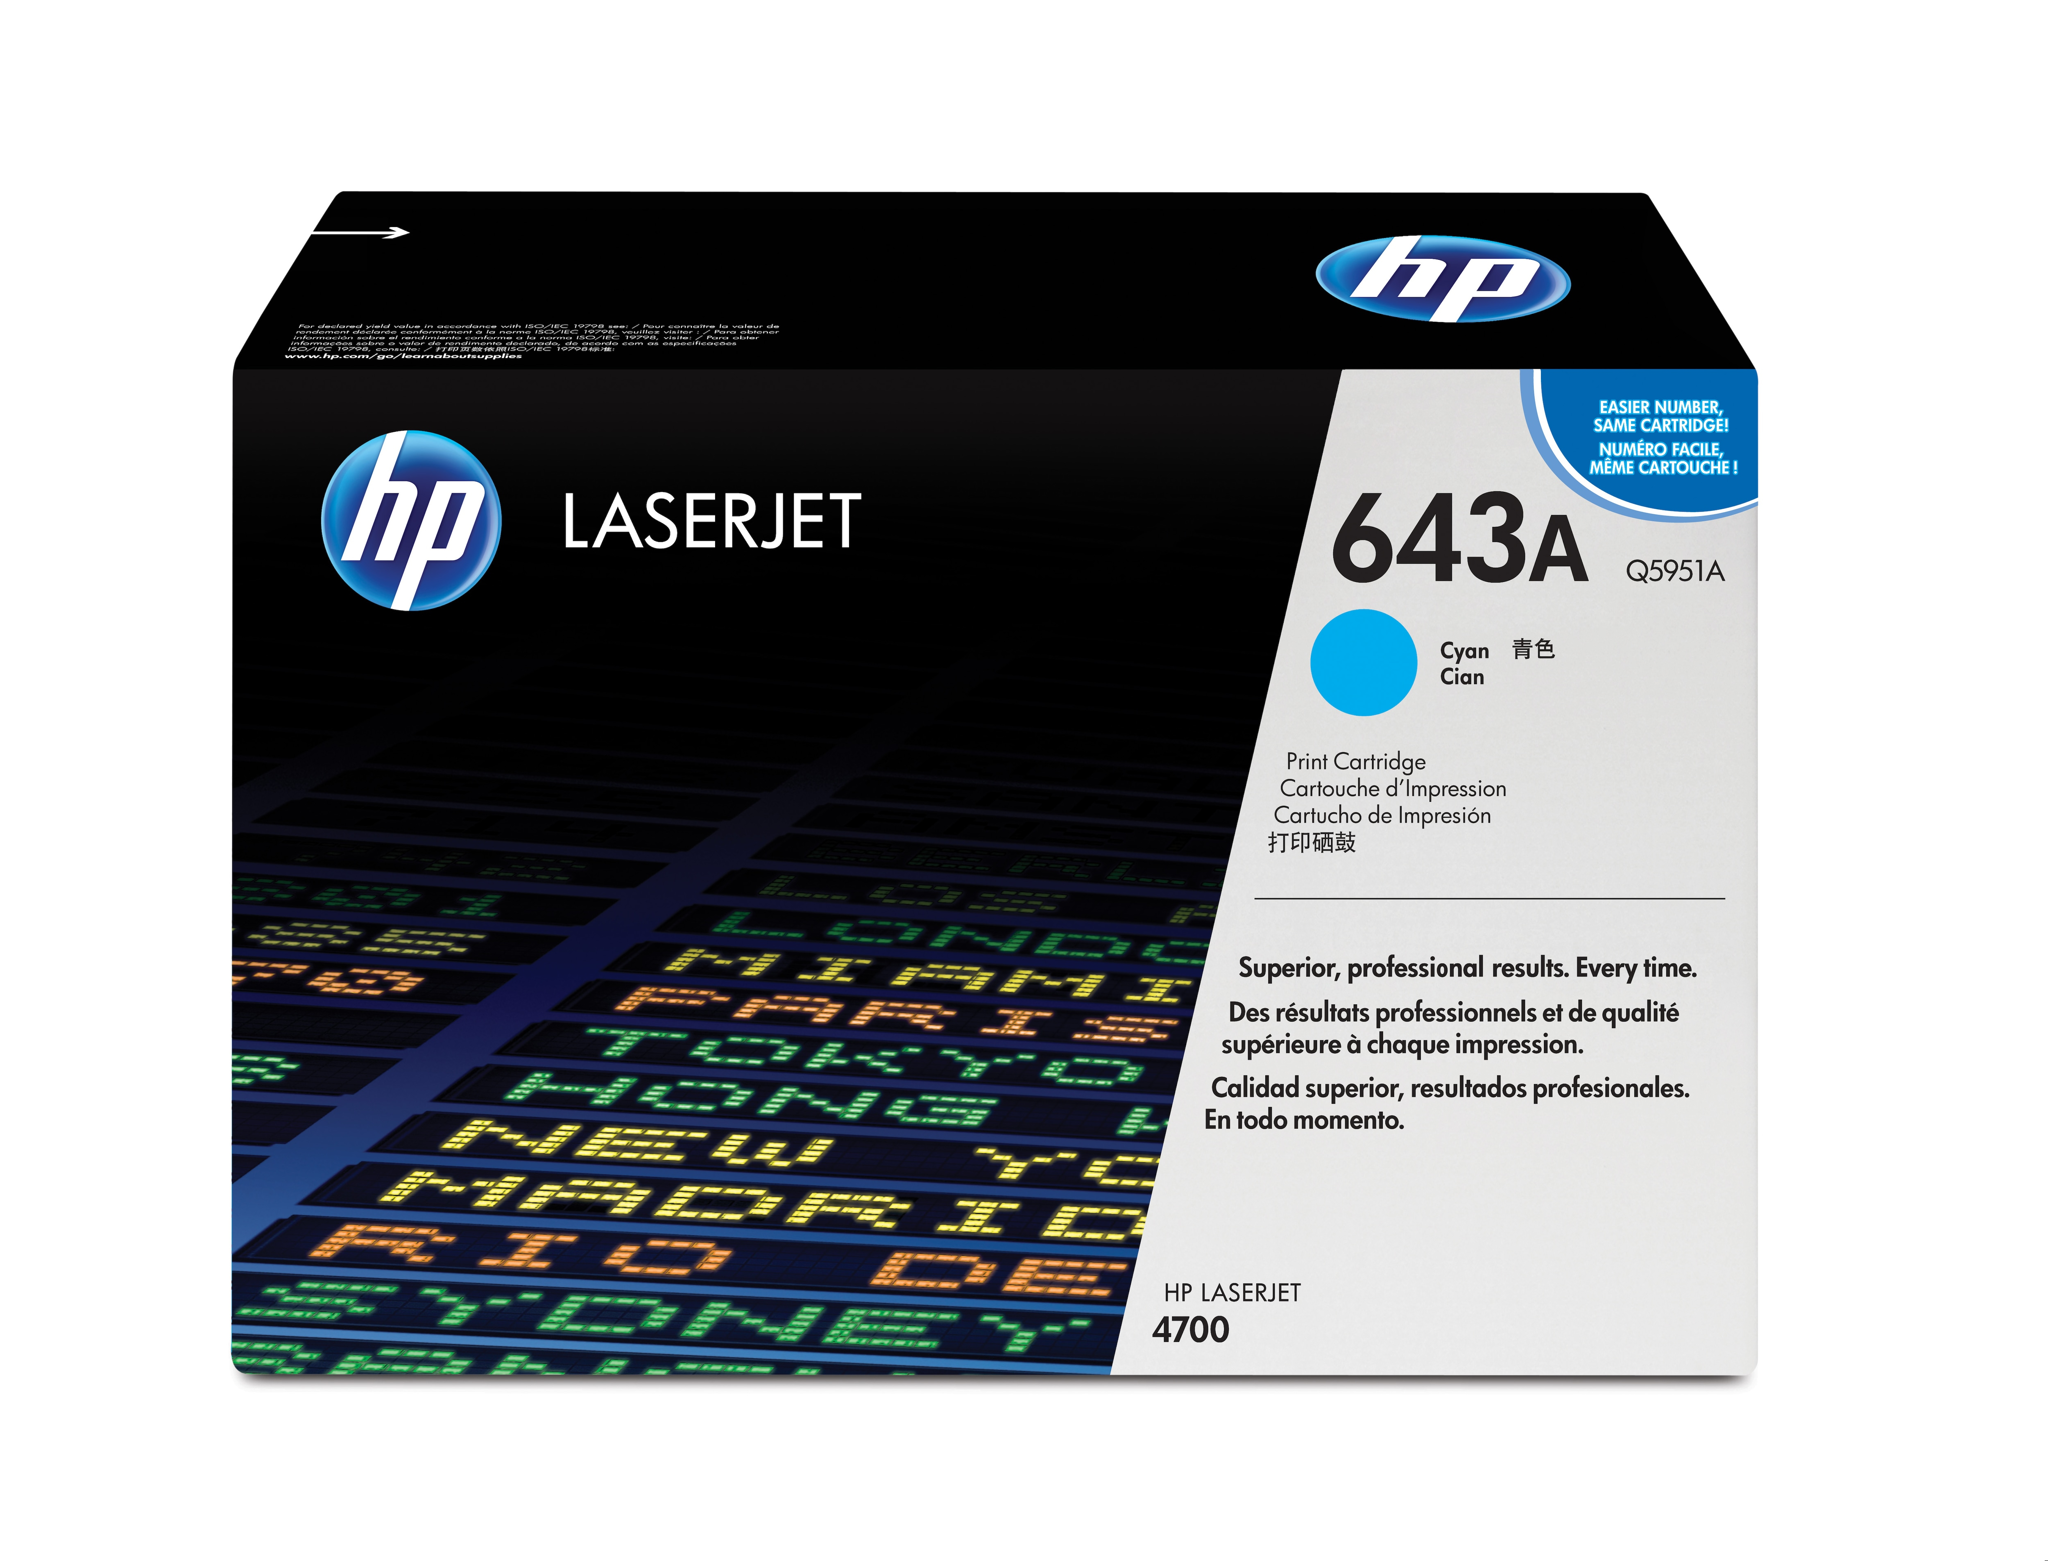 Bild von HP Color LaserJet 643A - Tonereinheit Original - Cyan - 10.000 Seiten